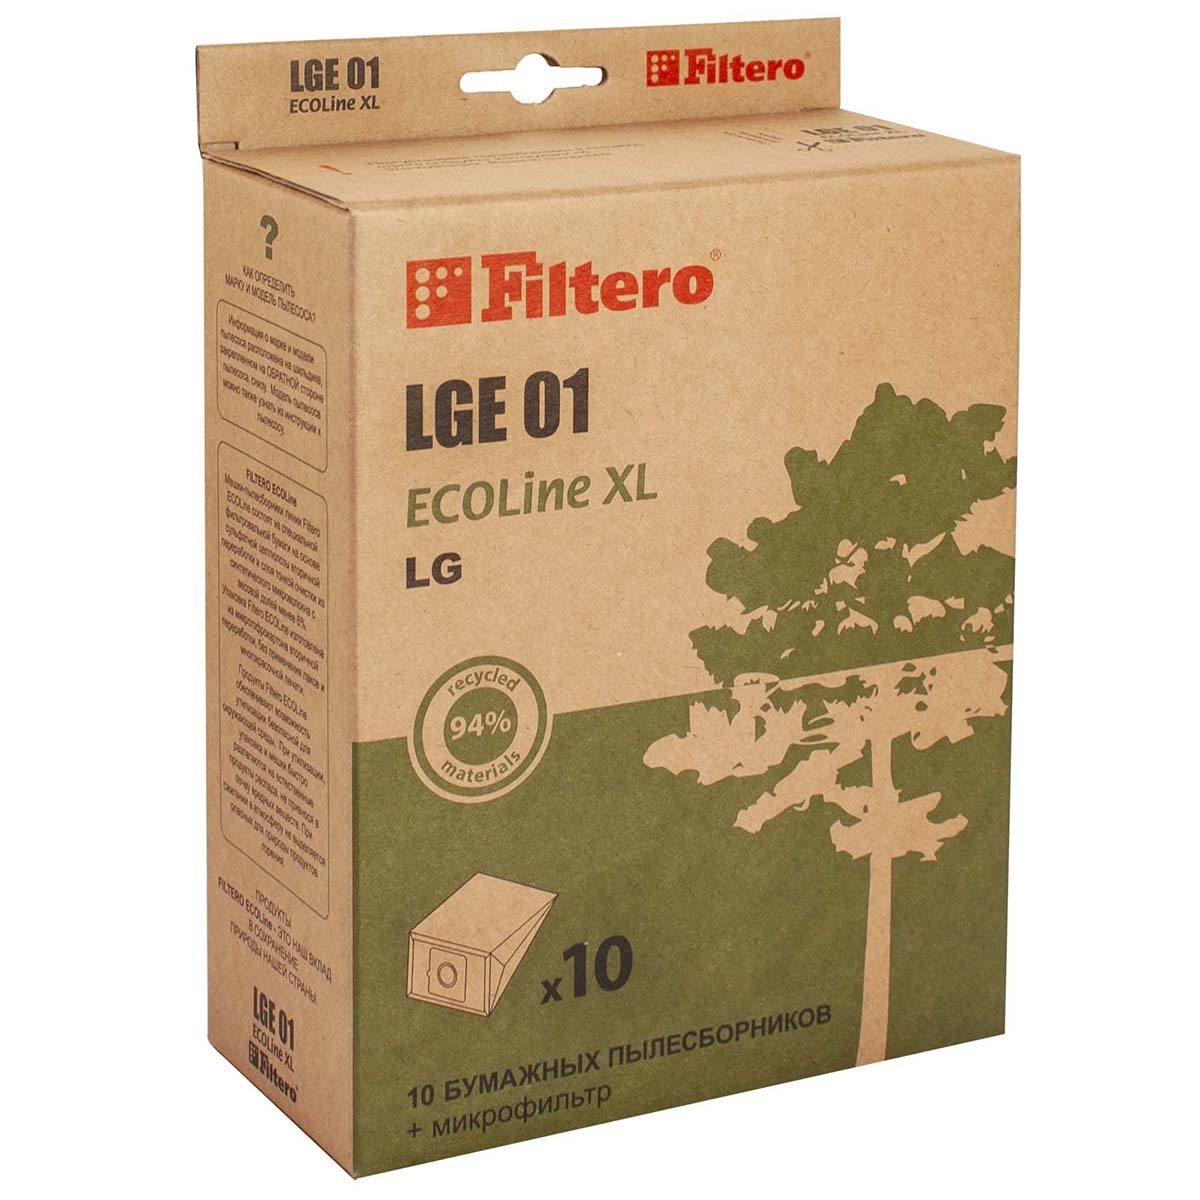 Мешки-пылесборники Filtero LGE 01 ECOLine XL, для LG, Scarlett, бумажные, 10 шт + фильтр  #1